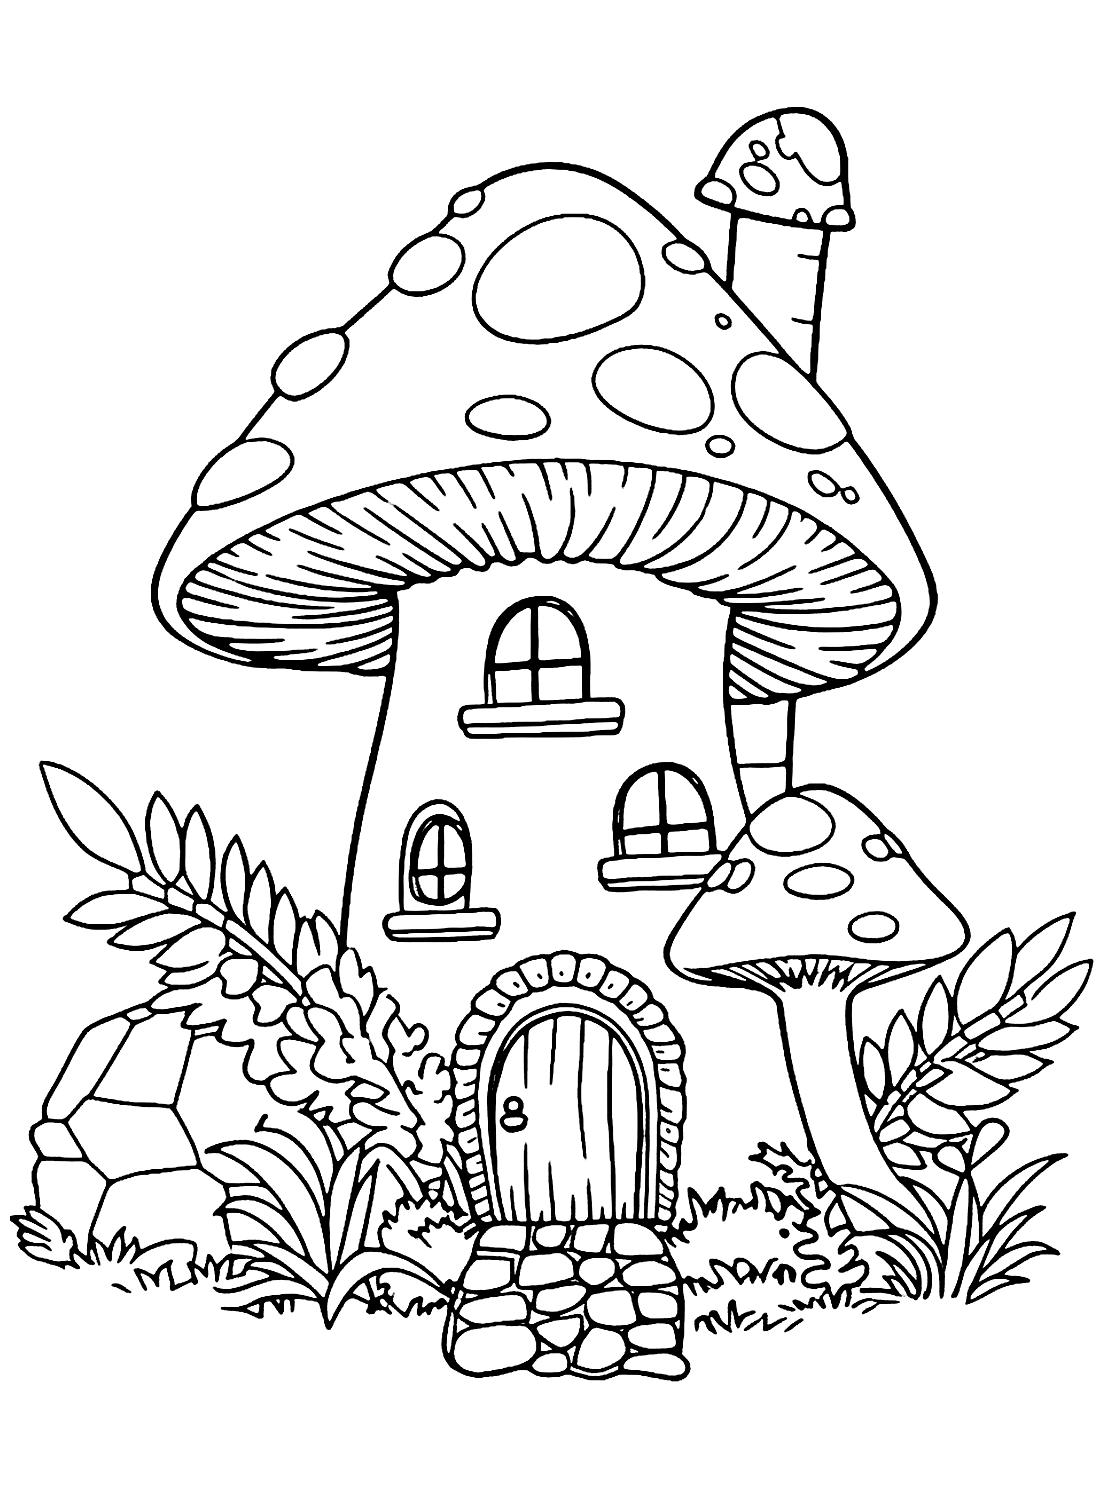 Dibujo de Seta doméstica para colorear de Mushroom